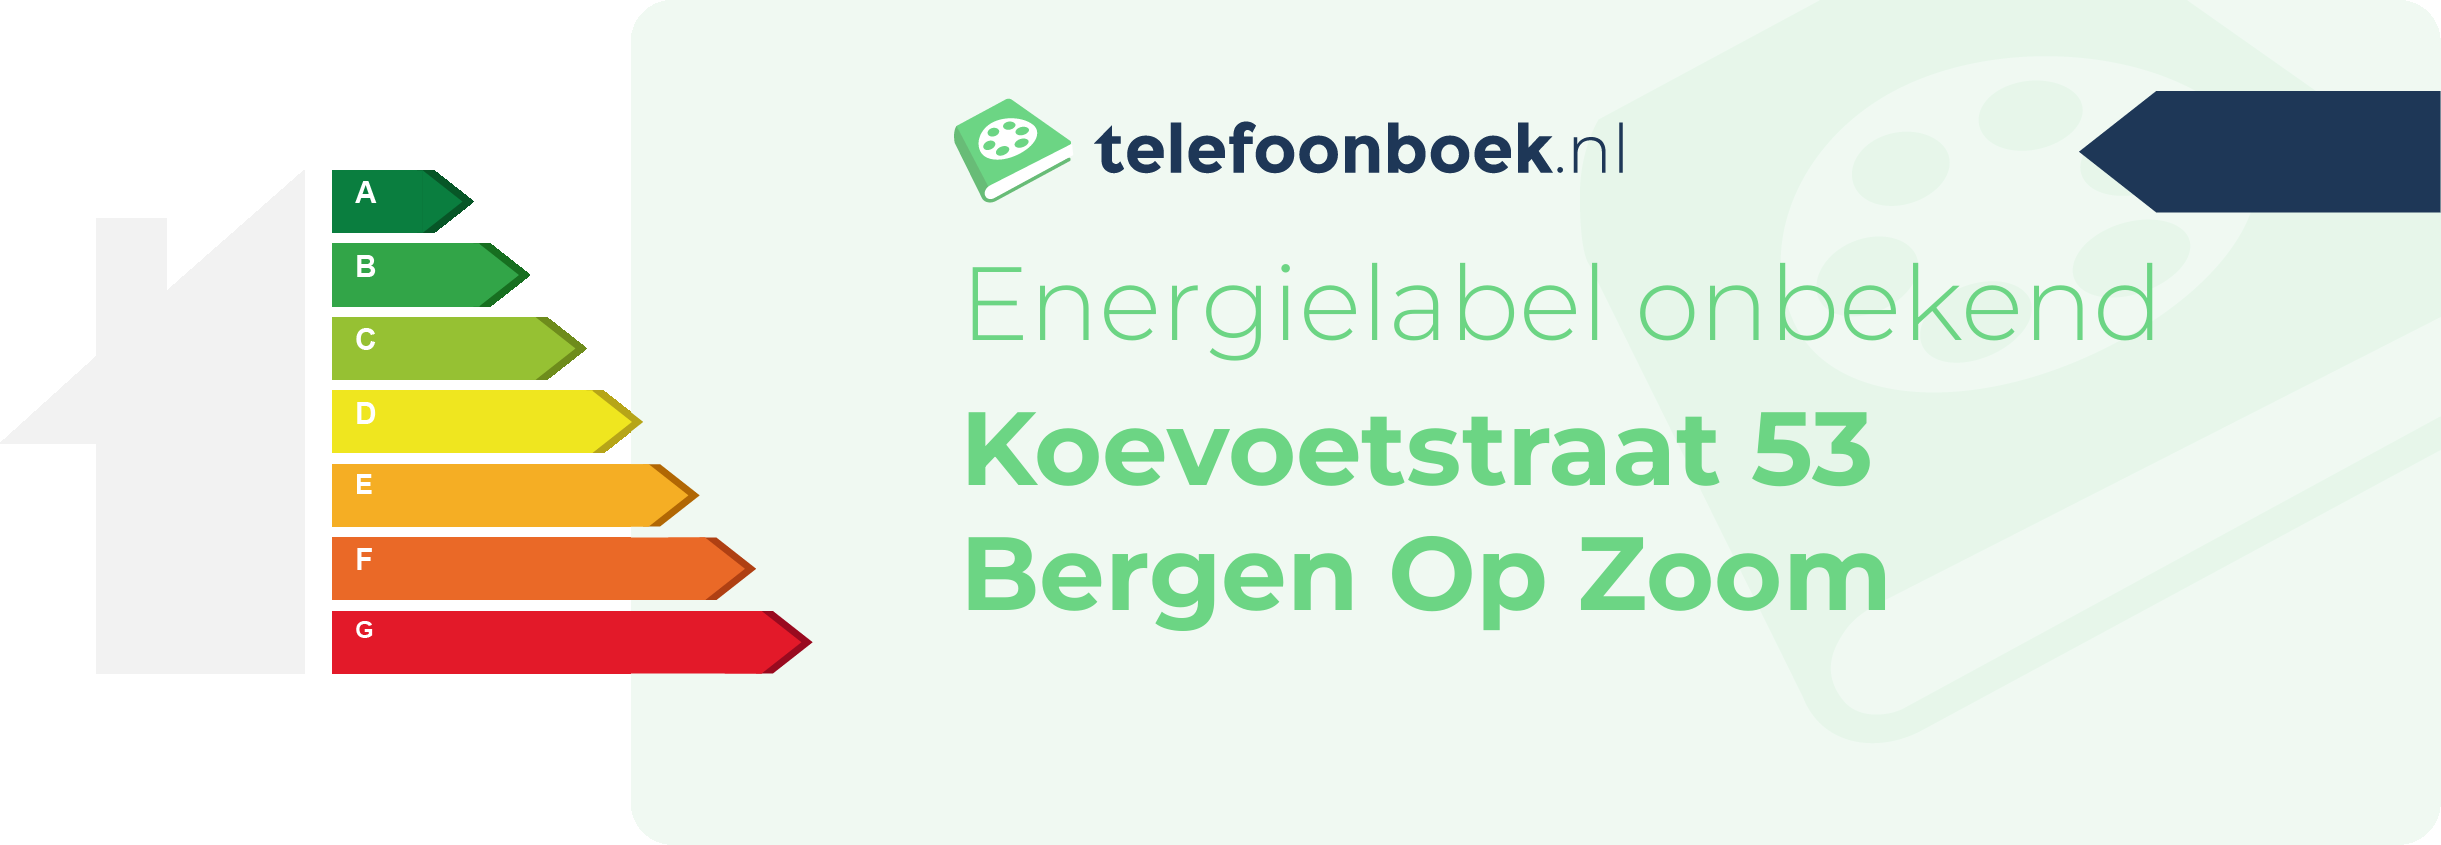 Energielabel Koevoetstraat 53 Bergen Op Zoom